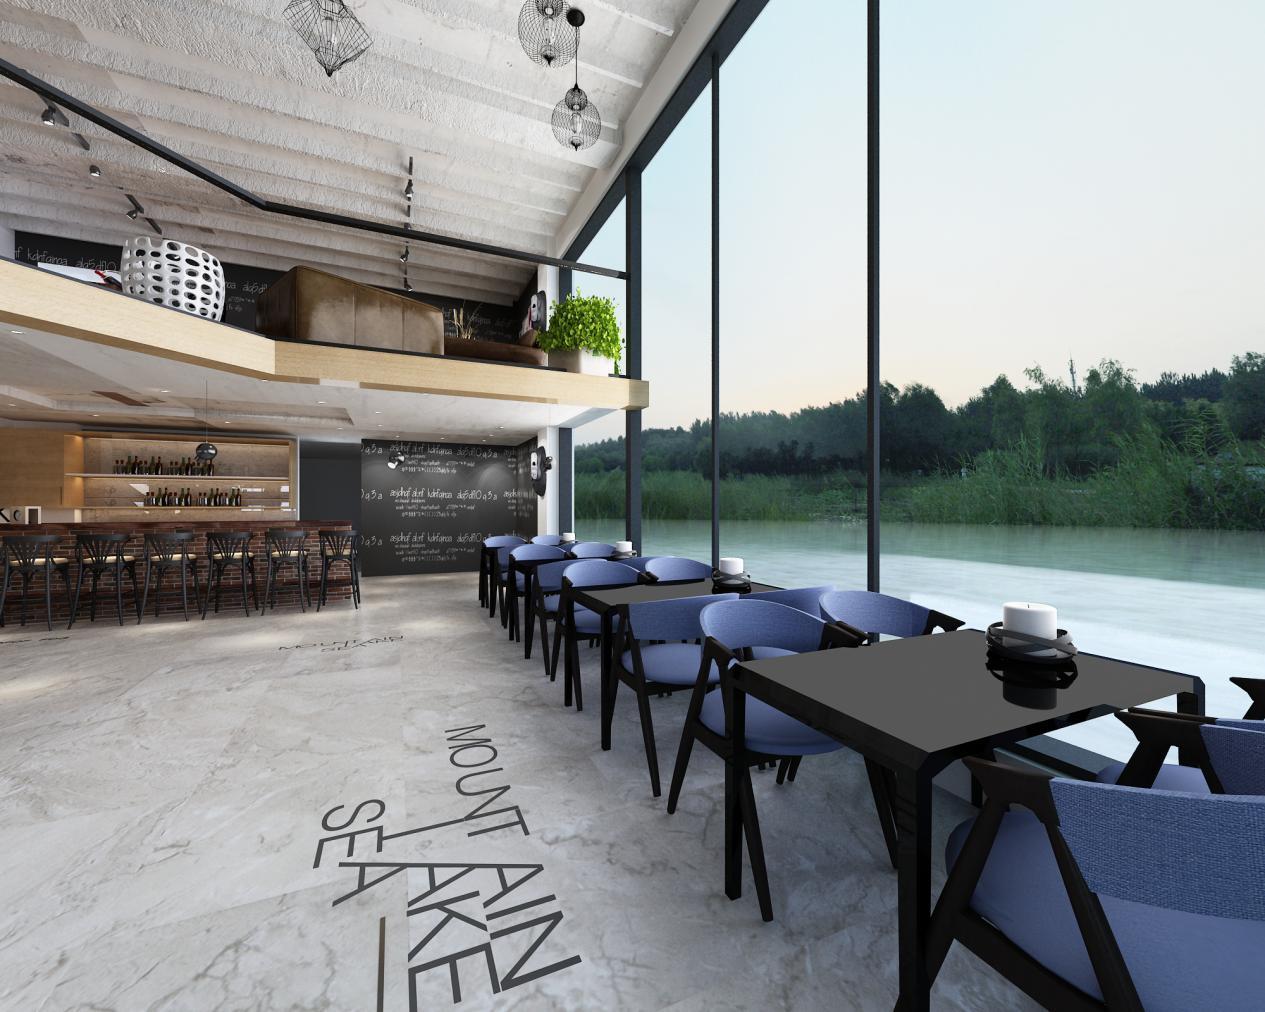 现代咖啡厅,惯常是简约型的设计,整体环境给人比较温馨明亮,有质感的